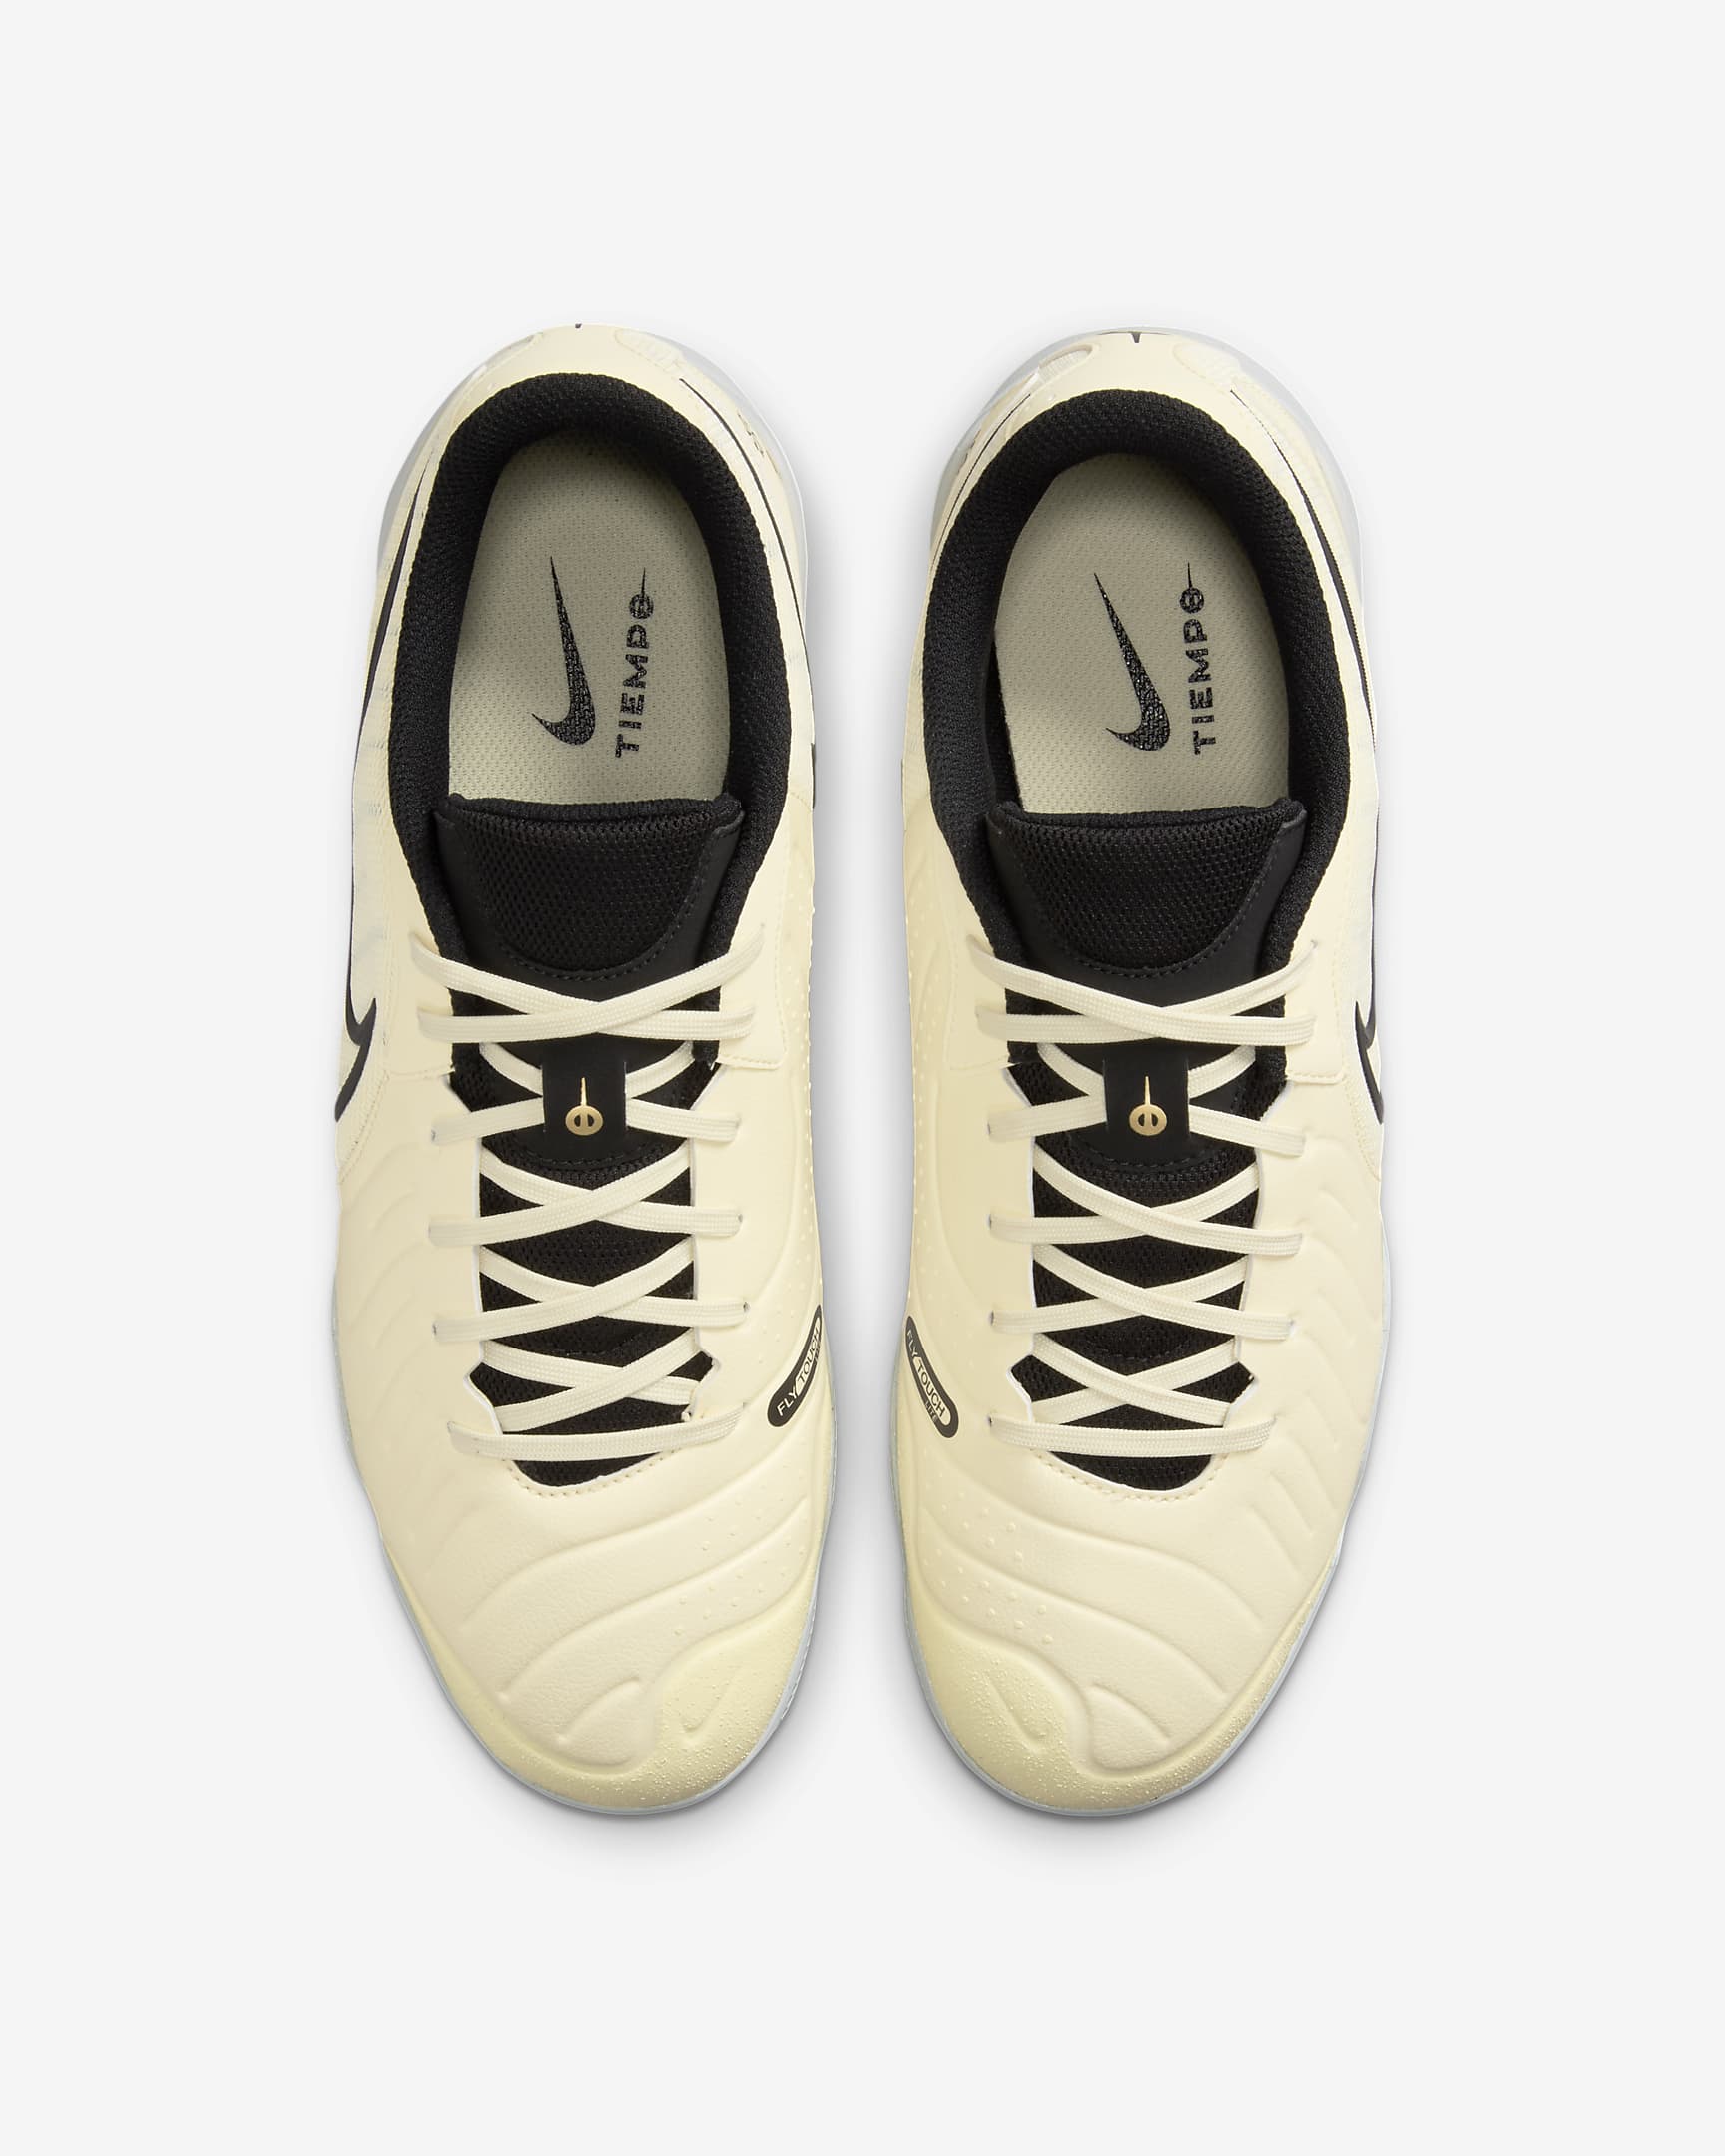 Nike Tiempo Legend 10 Academy Indoor Court Low-Top Football Shoes - Lemonade/Metallic Gold Coin/Black